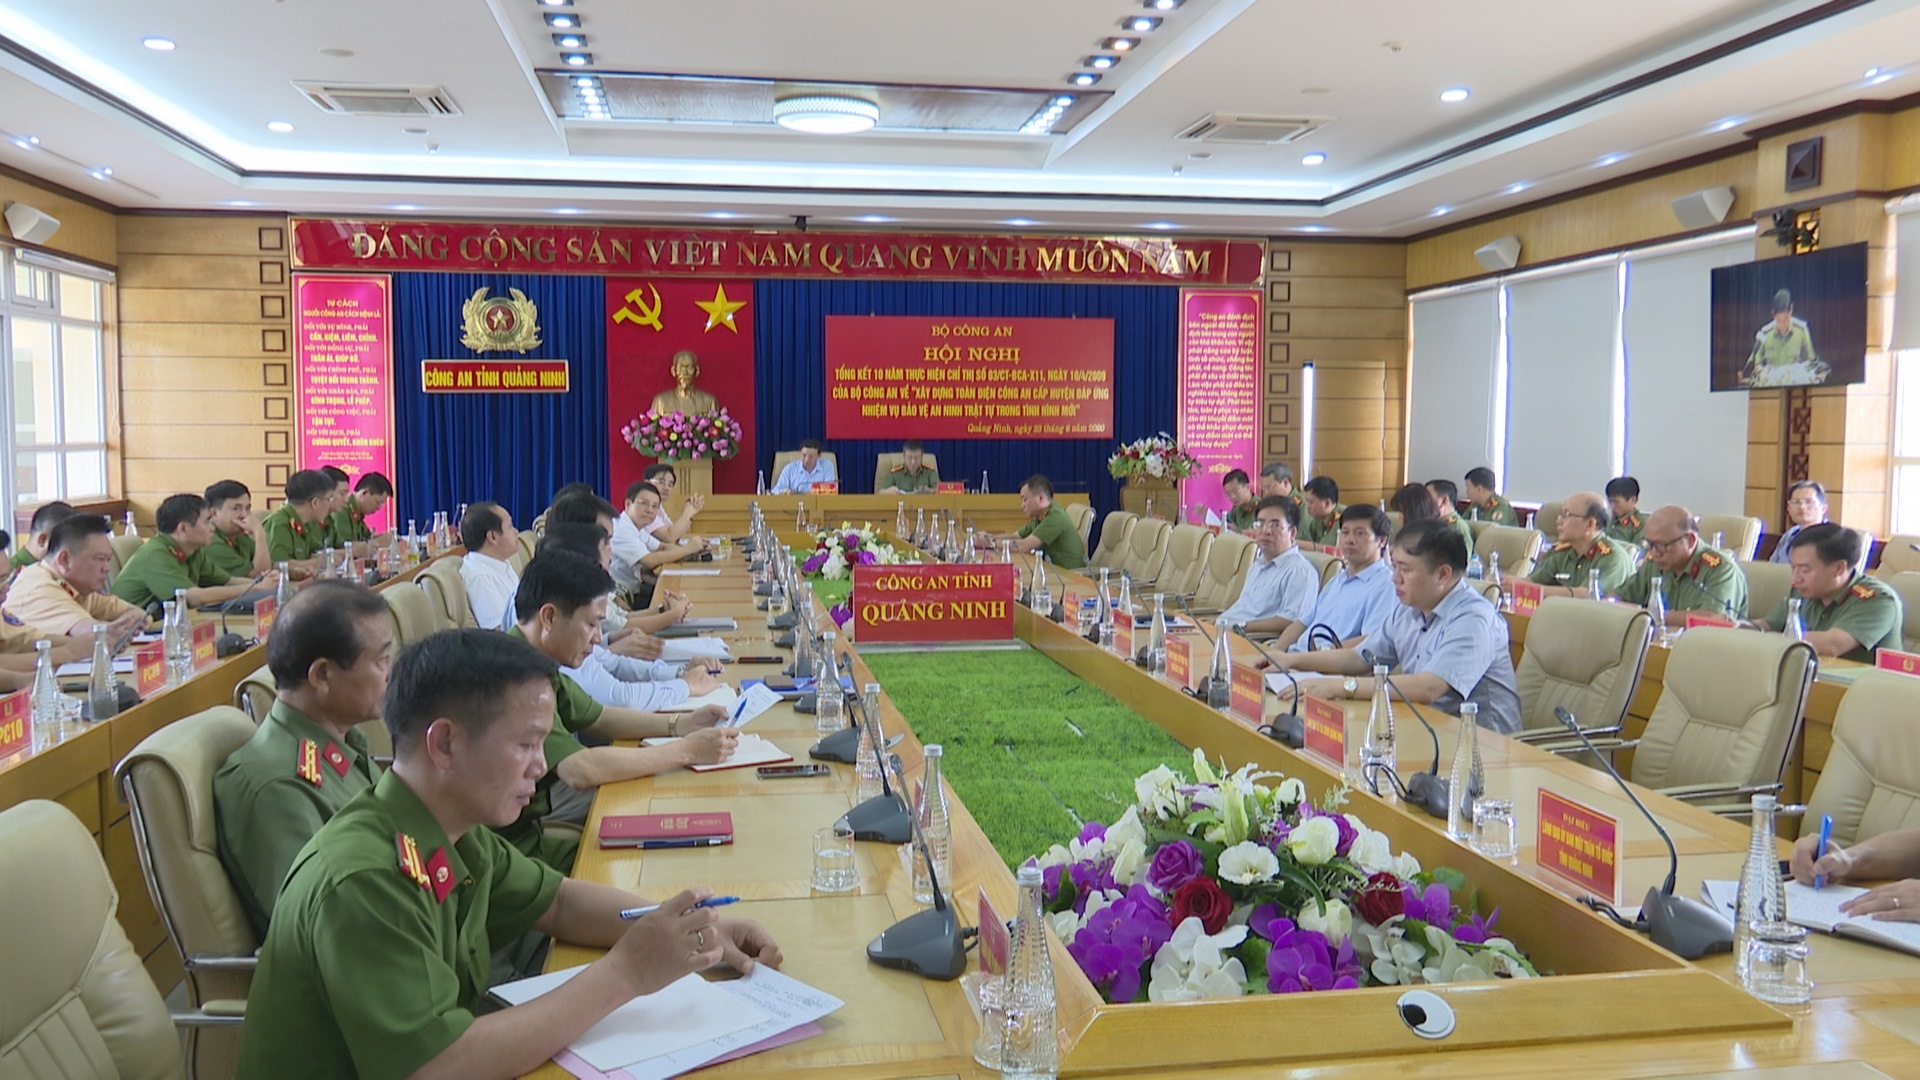 Quang cảnh hội nghị tại điểm cầu Công an tỉnh Quảng Ninh 